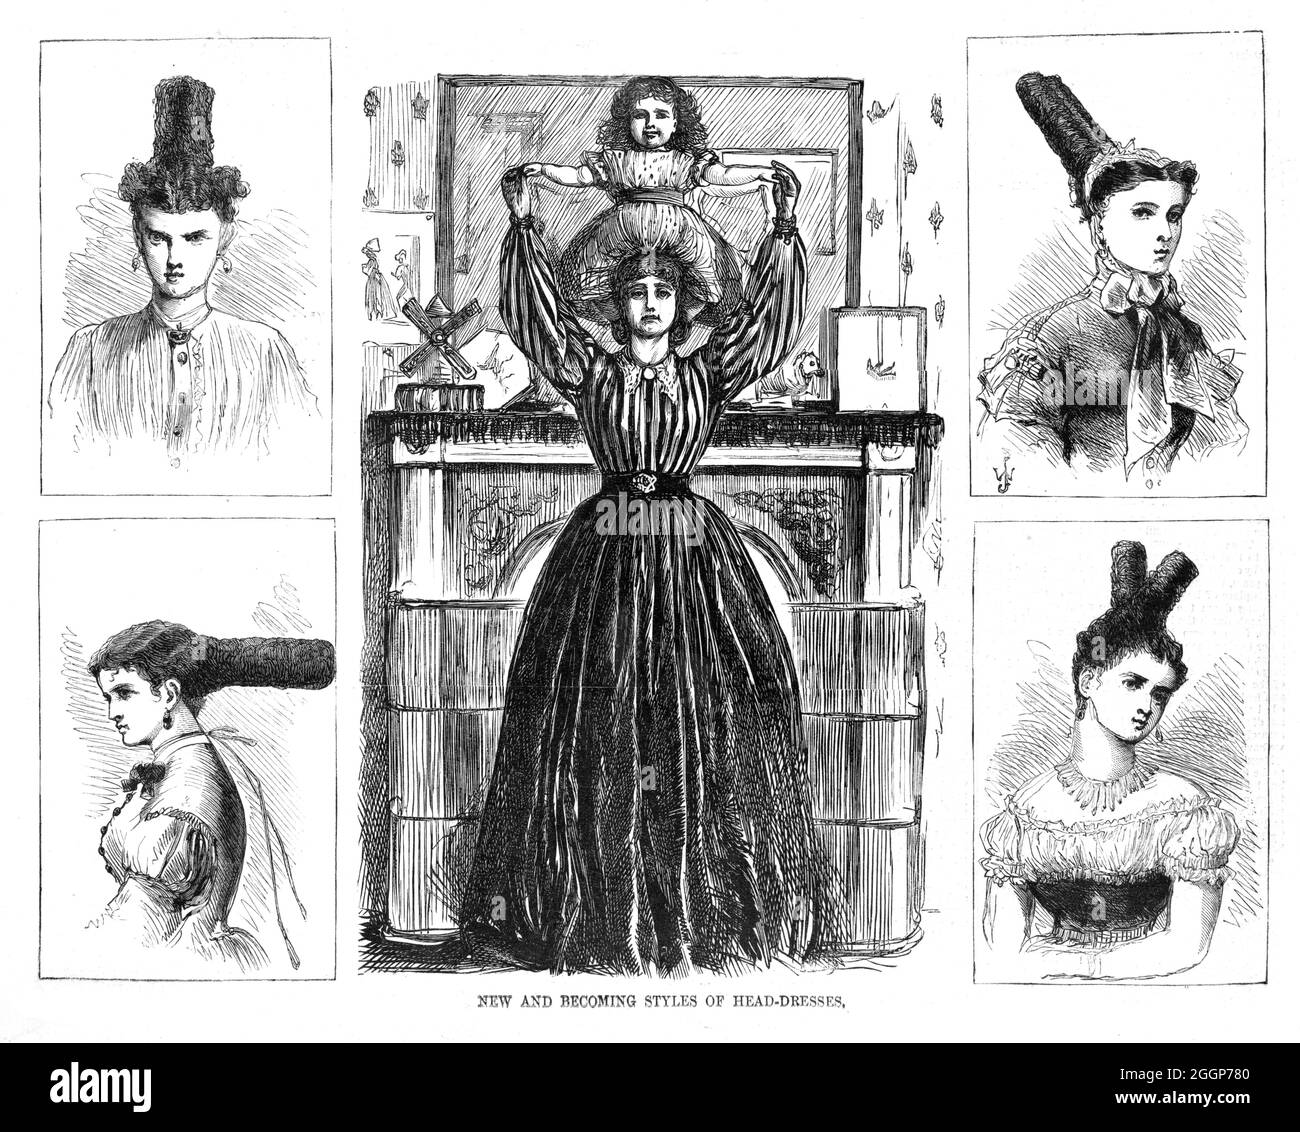 Nouveaux styles de coiffure, caricature satirique de Thomas Nast (1840-1902). Au centre, une femme tient un enfant au-dessus de sa tête, entouré de quatre vues de vignette de 'nouvelles' coiffures. Harper's Weekly, 1867. Banque D'Images